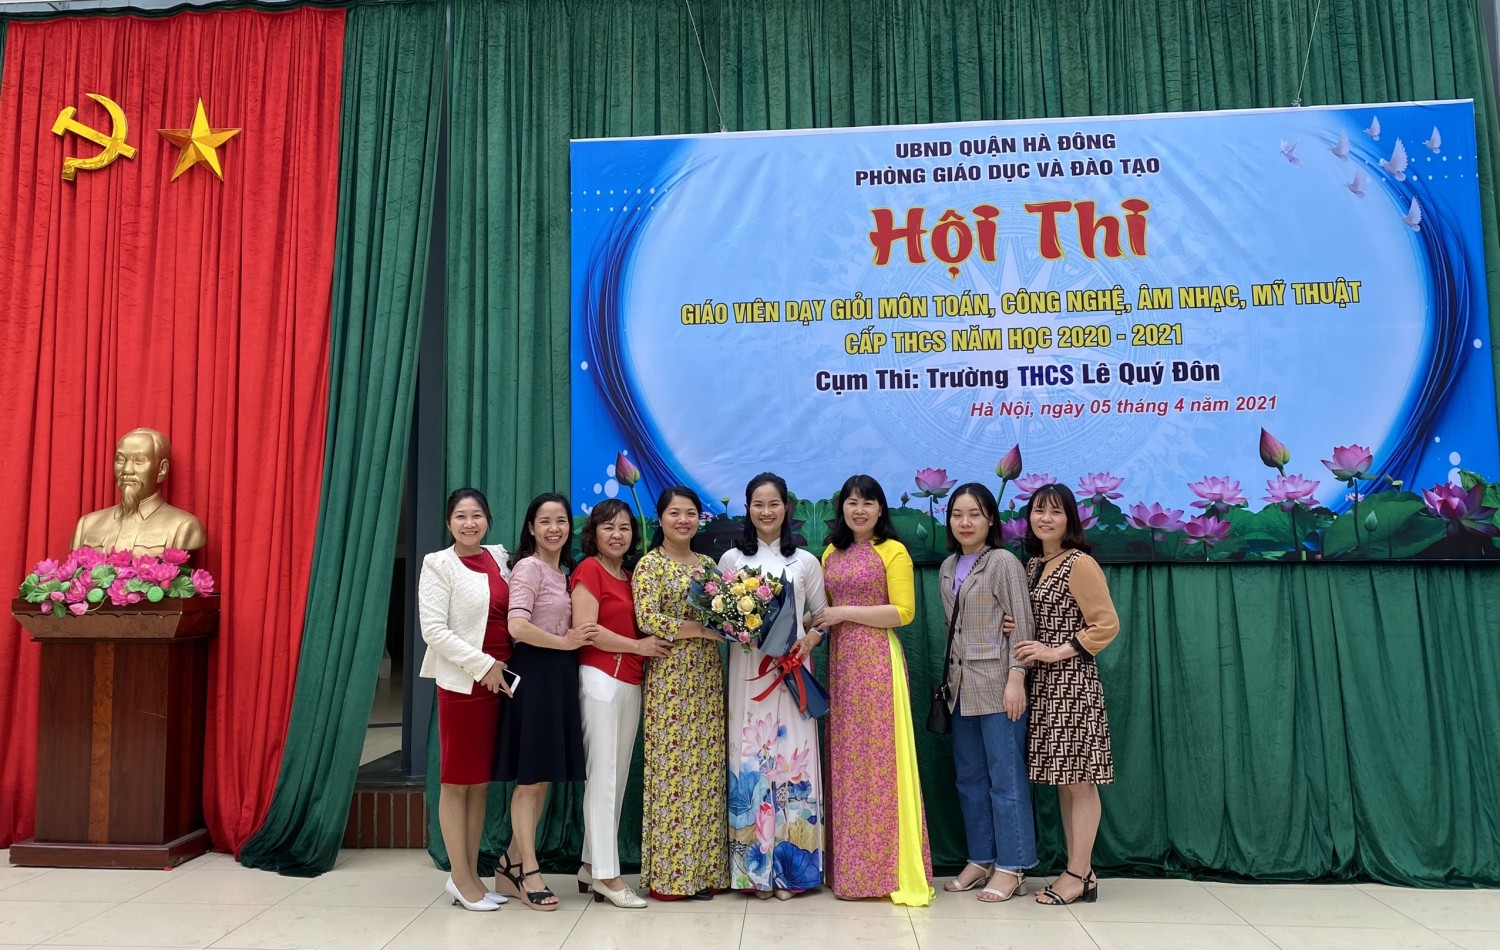 Sáng ngày 05/4/2021, Trường THCS Dương Nội đã có bài giảng thành công trong Hội thi Giáo viên giỏi cấp THCS quận Hà Đông năm học 2020 - 2021